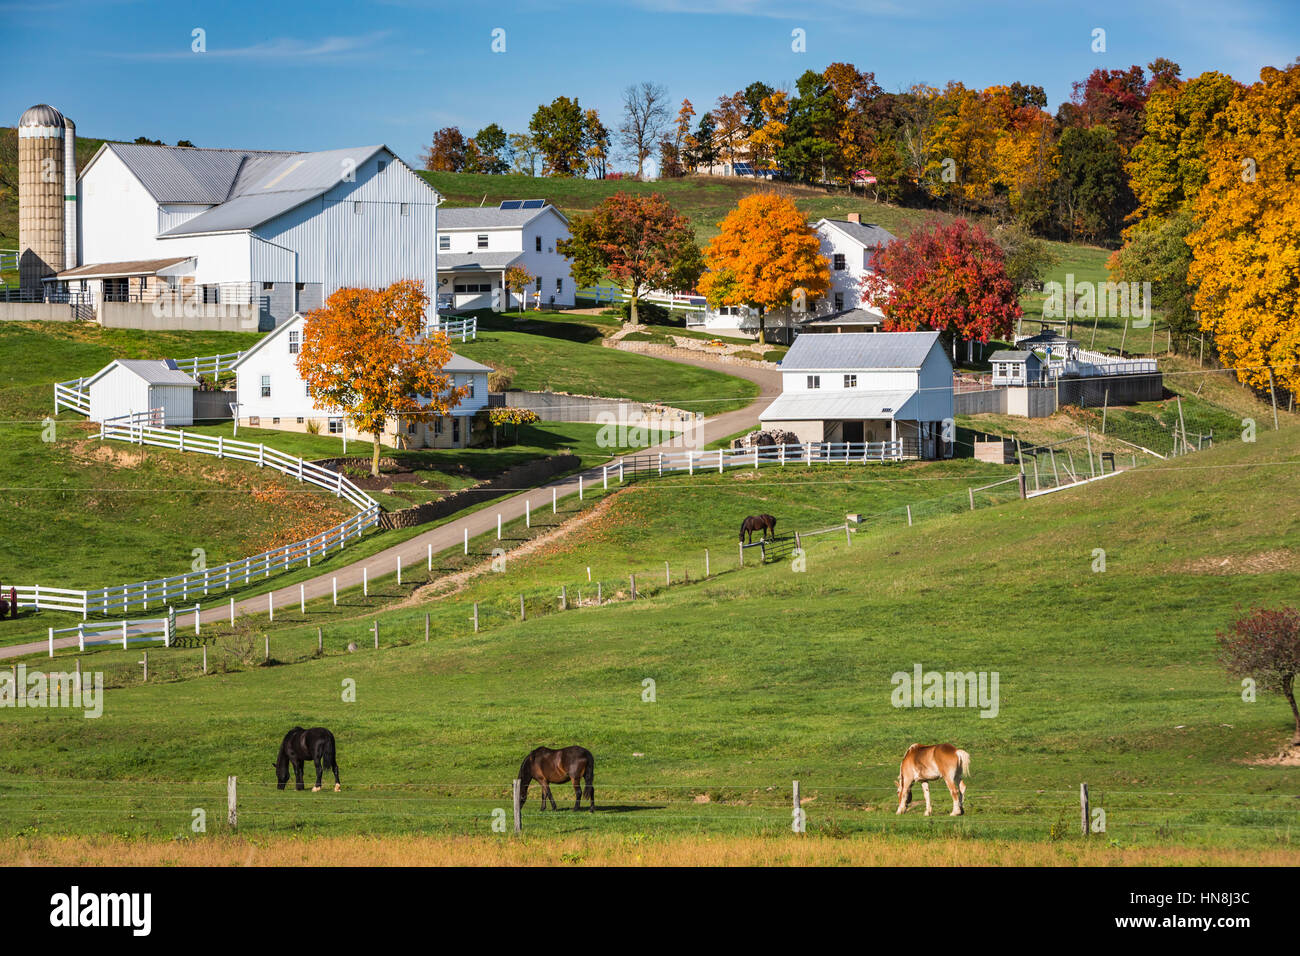 Una fattoria Amish con casa, granaio e cavalli nei pressi di fascino, Ohio, Stati Uniti d'America. Foto Stock